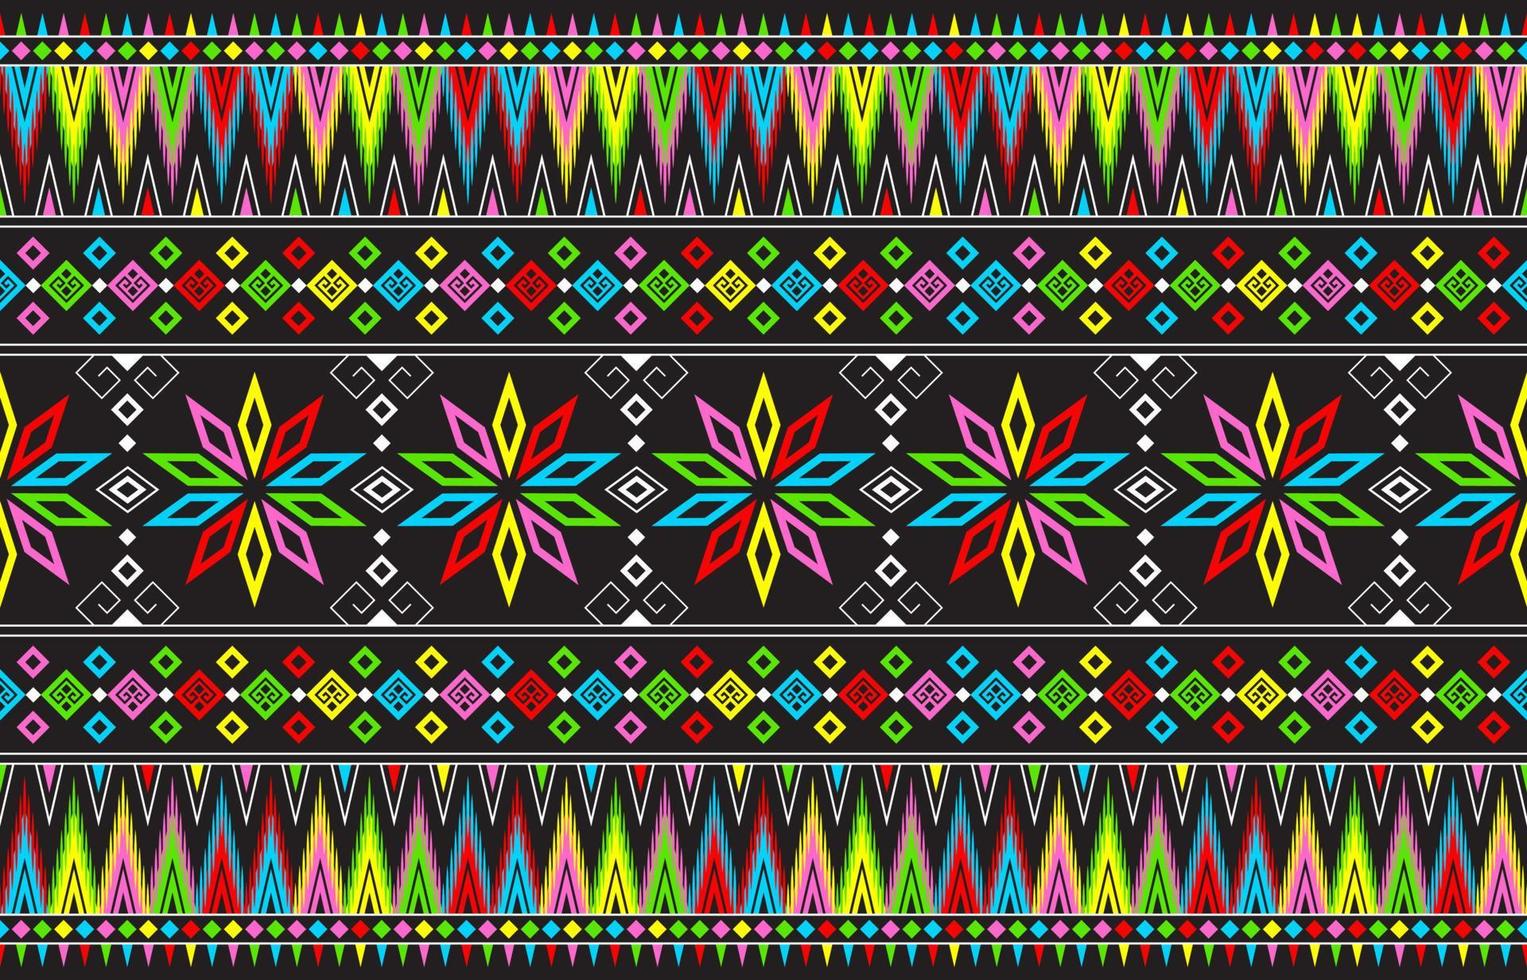 abstrakt söt Färg geometrisk stam- etnisk ikat folklore argyle orientalisk inföding mönster traditionell design för bakgrund, matta, tapeter, kläder, tyg, inslagning, tryck, batik, folkmusik, sticka, rand vektor